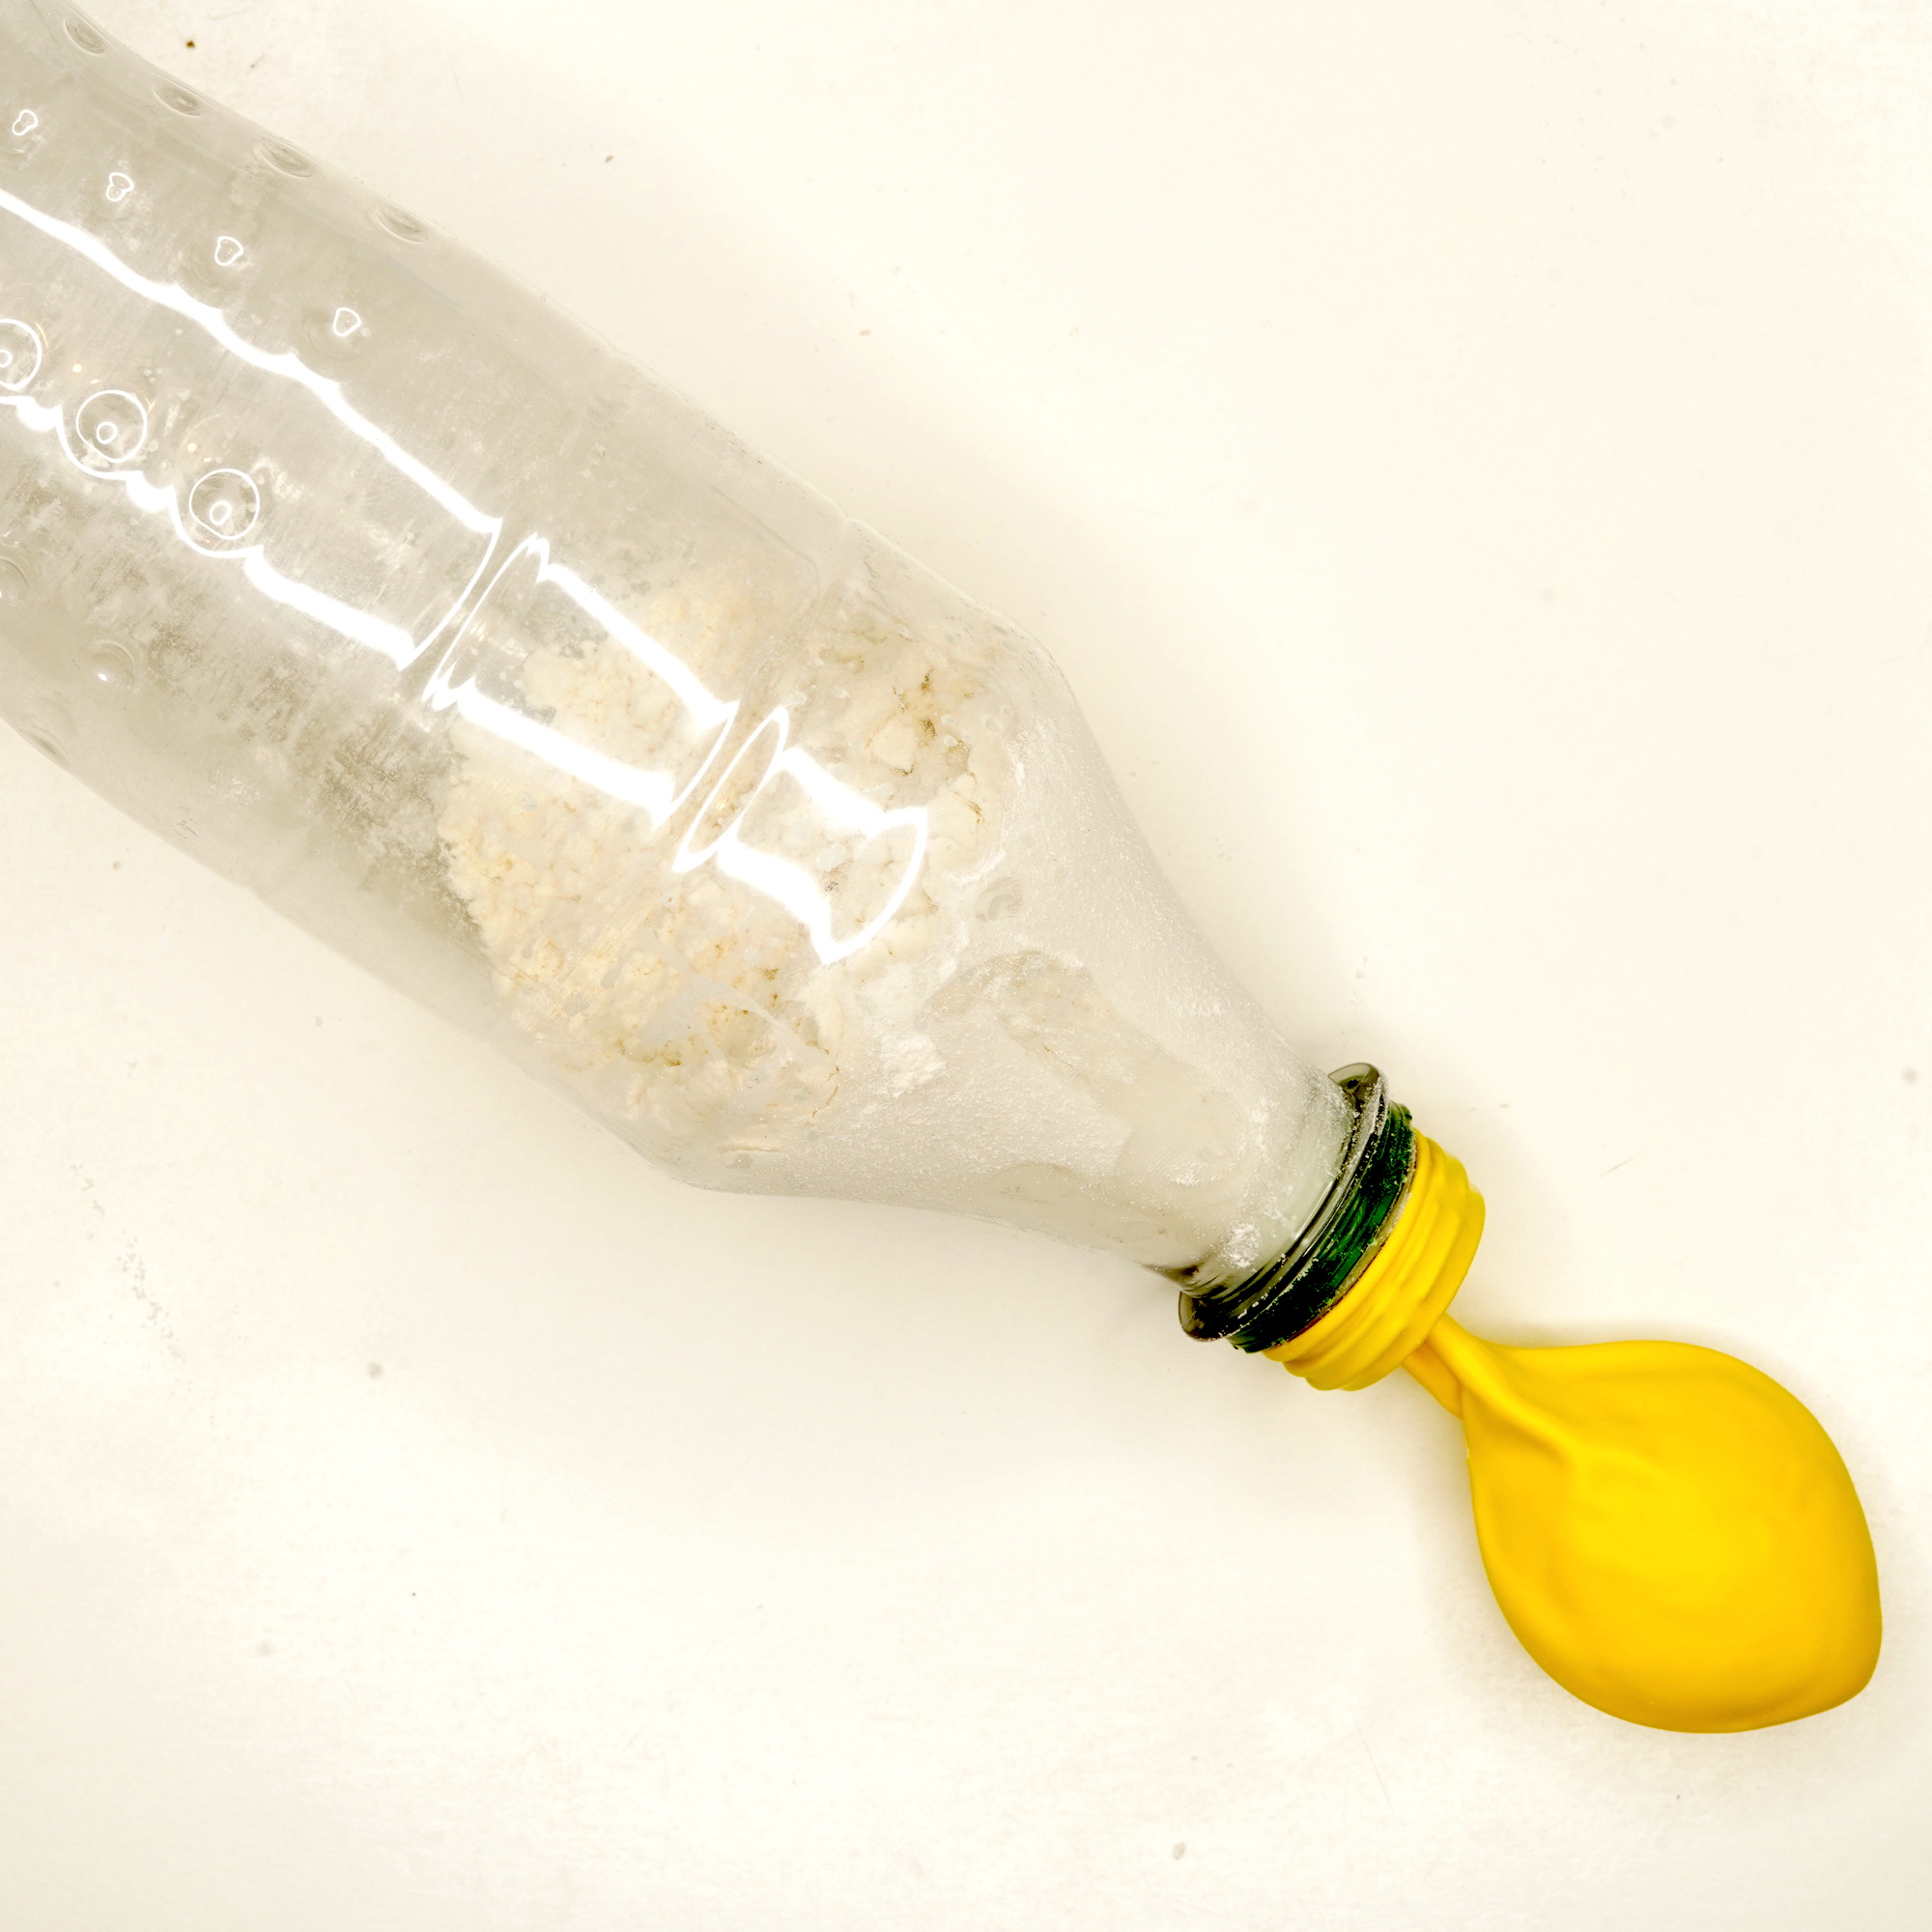 Verser la farine dans la bouteille d’eau puis placer le ballon sur le goulot de la bouteille et retourner la bouteille pour que la farine remplisse le ballon. Faire un noeud au ballon